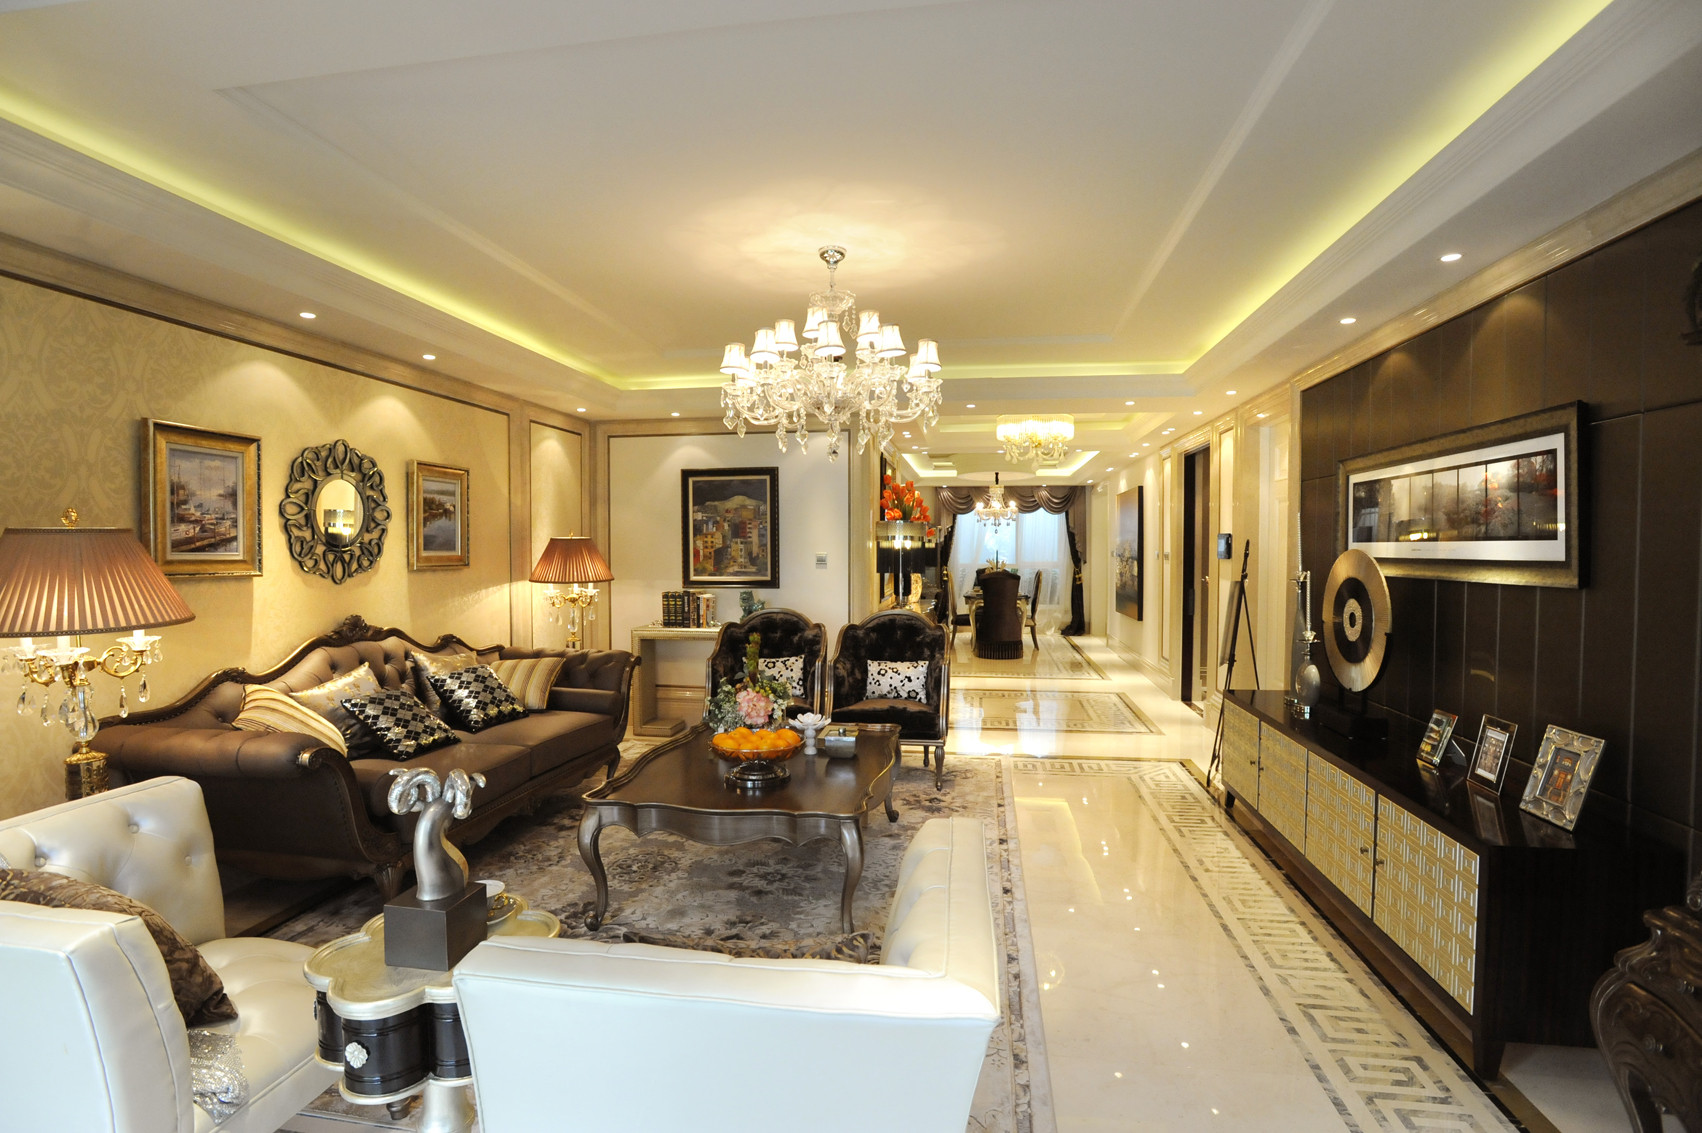 豪华型装修,大户型,140平米以上装修,客厅,沙发,电视背景墙,欧式风格,暖色调